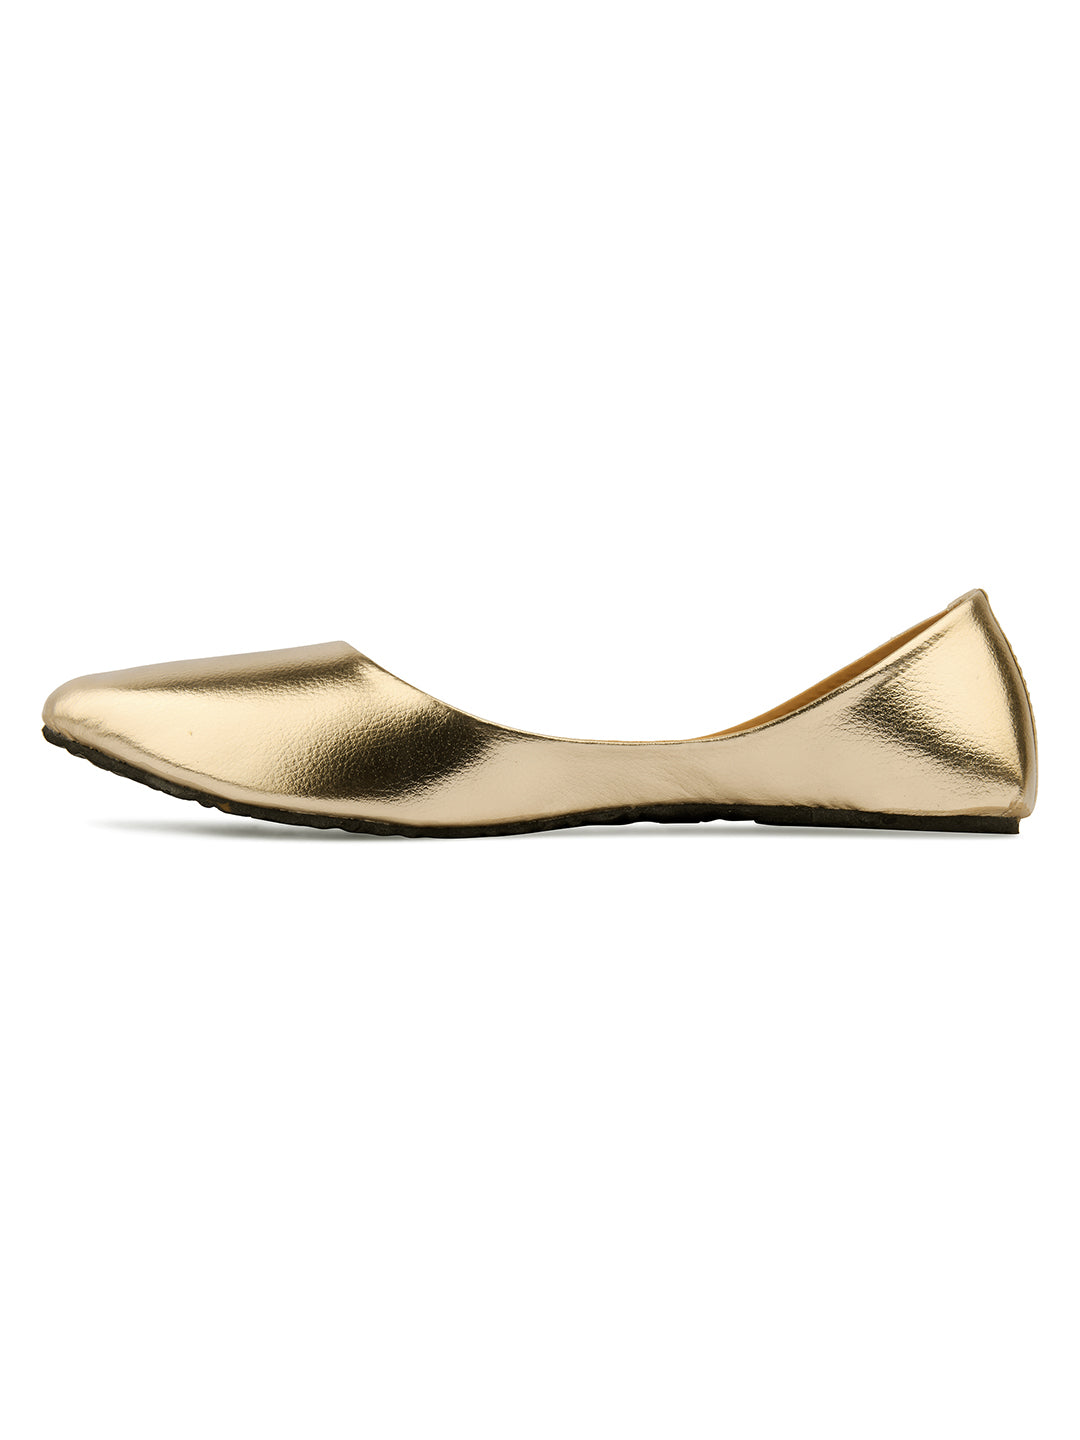 DESI COLOUR Women Gold-Toned Ballerinas Flats